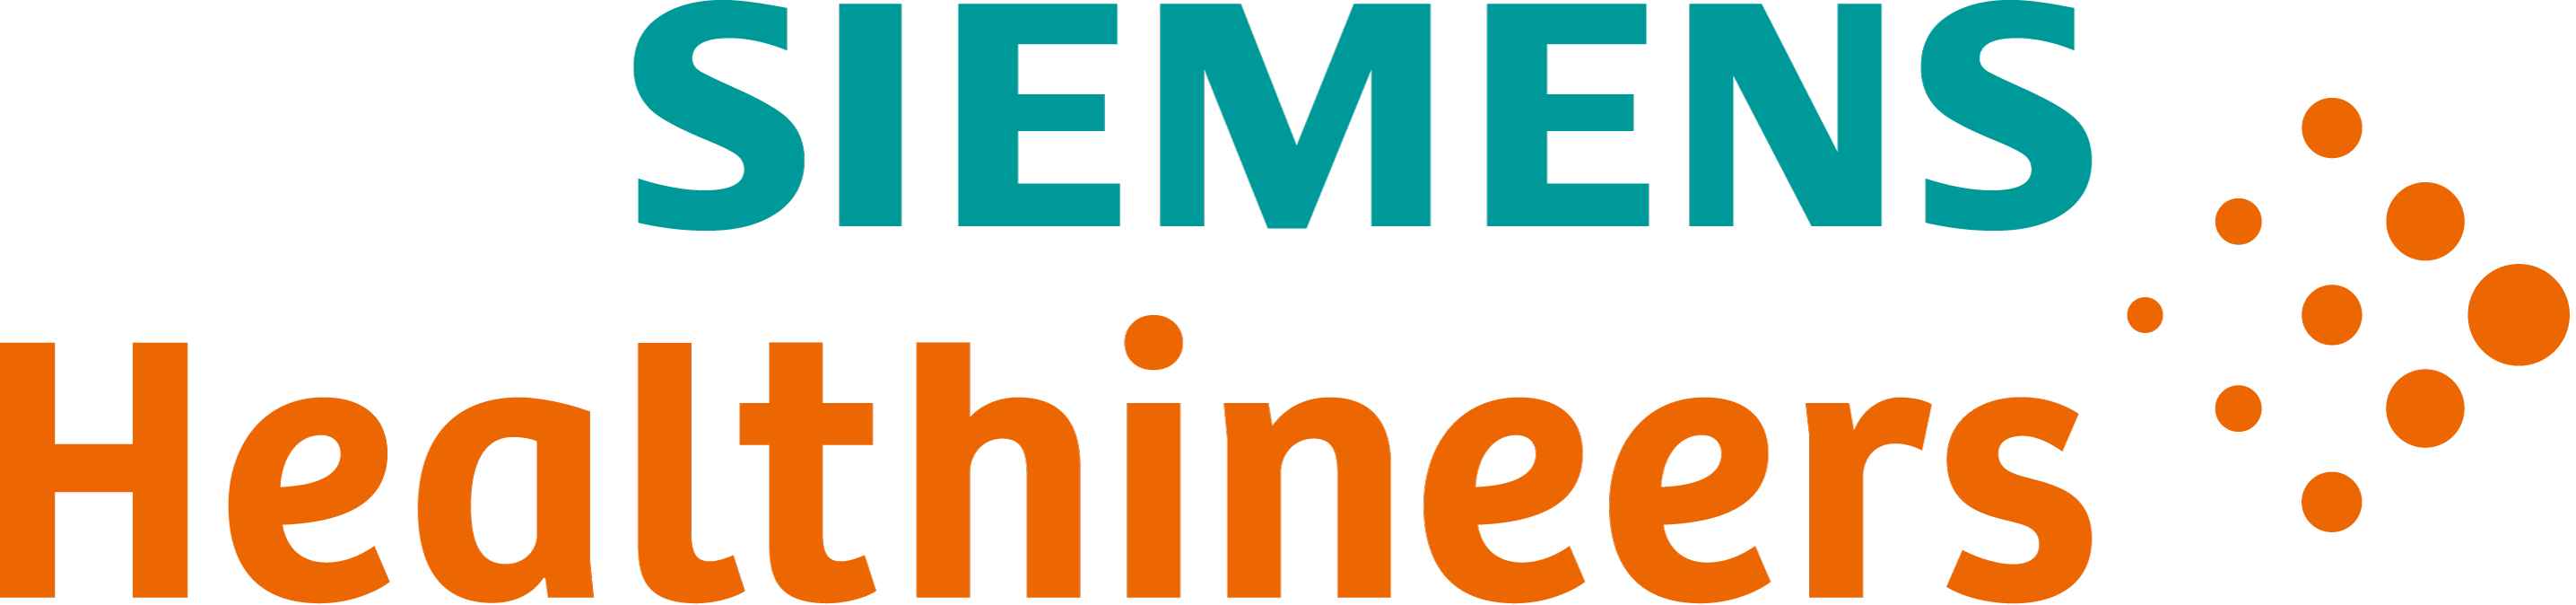 Siemens Healthlineers